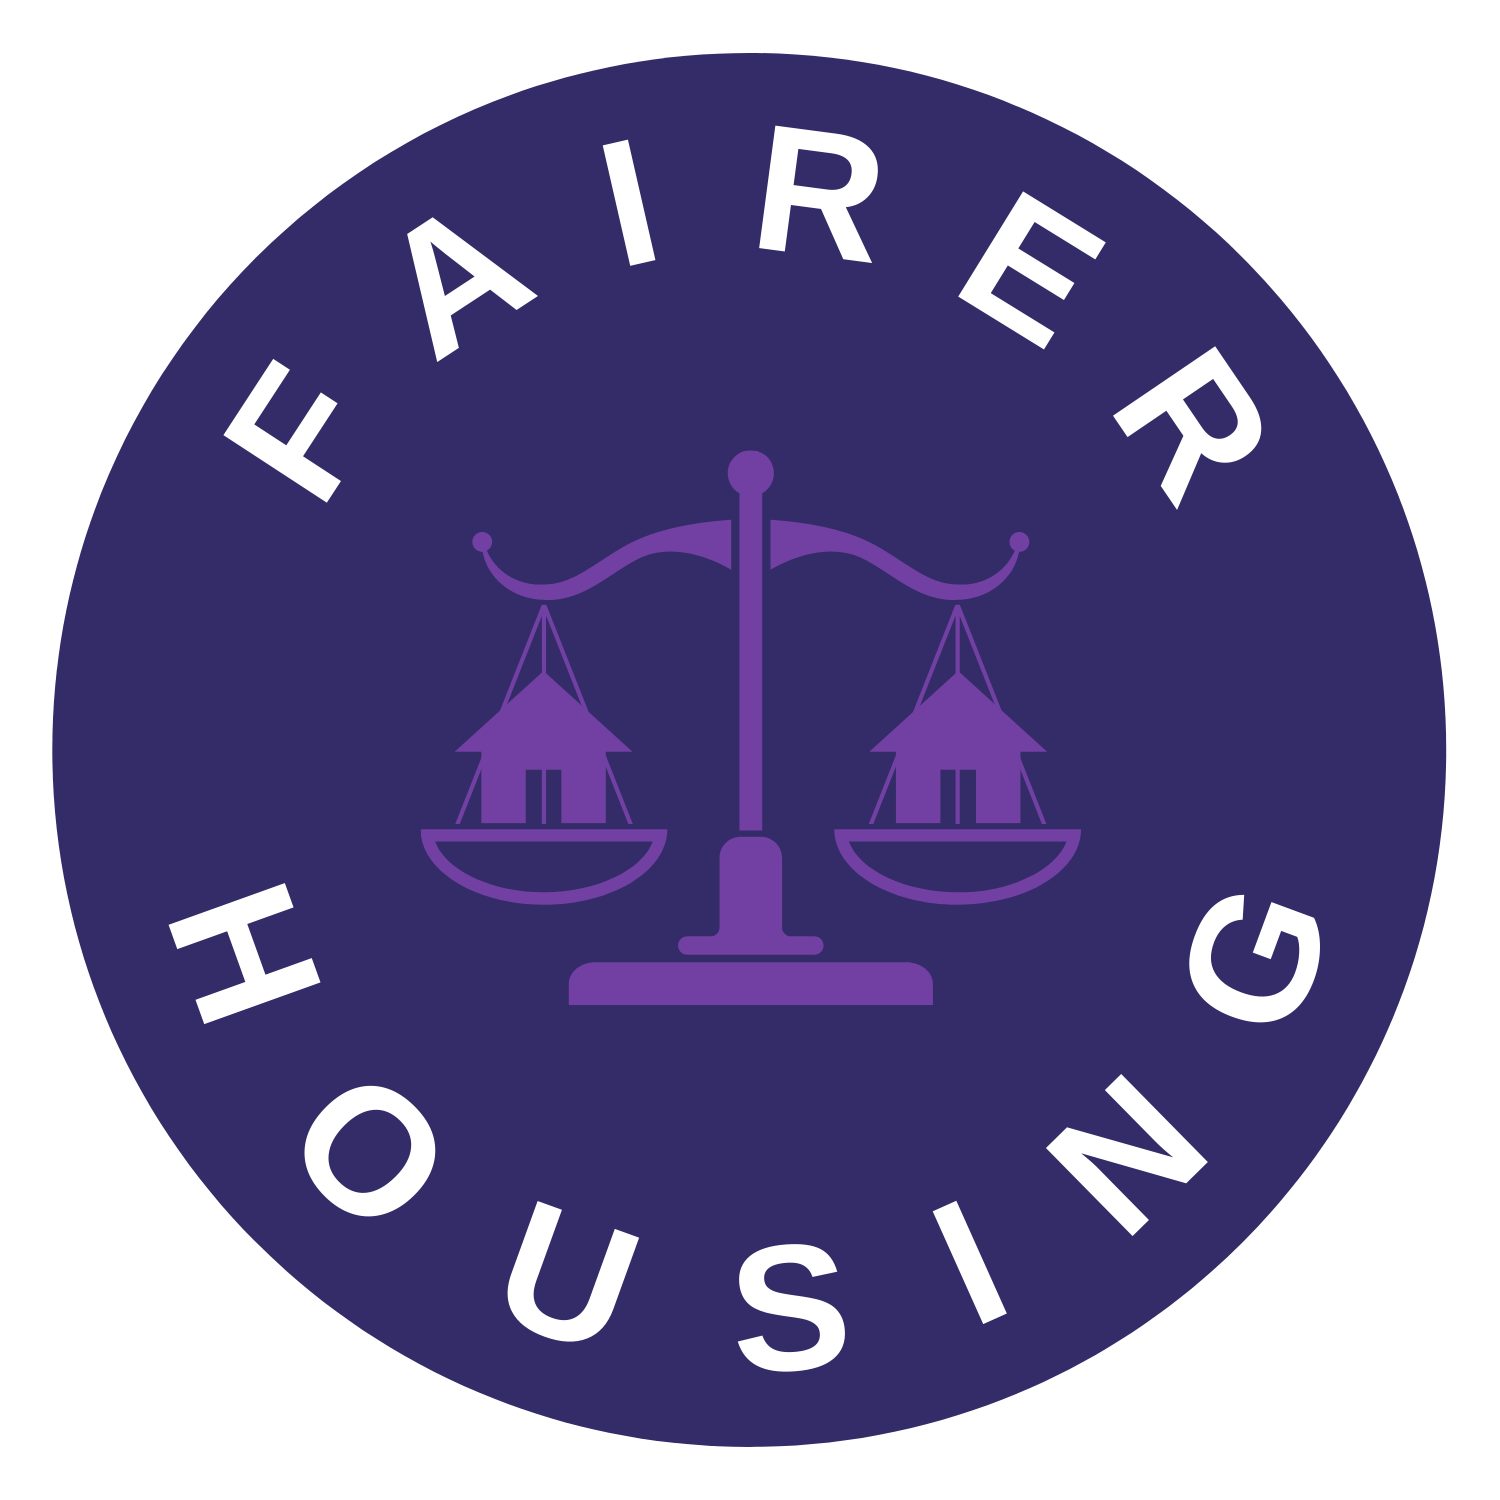 Fairer Housing